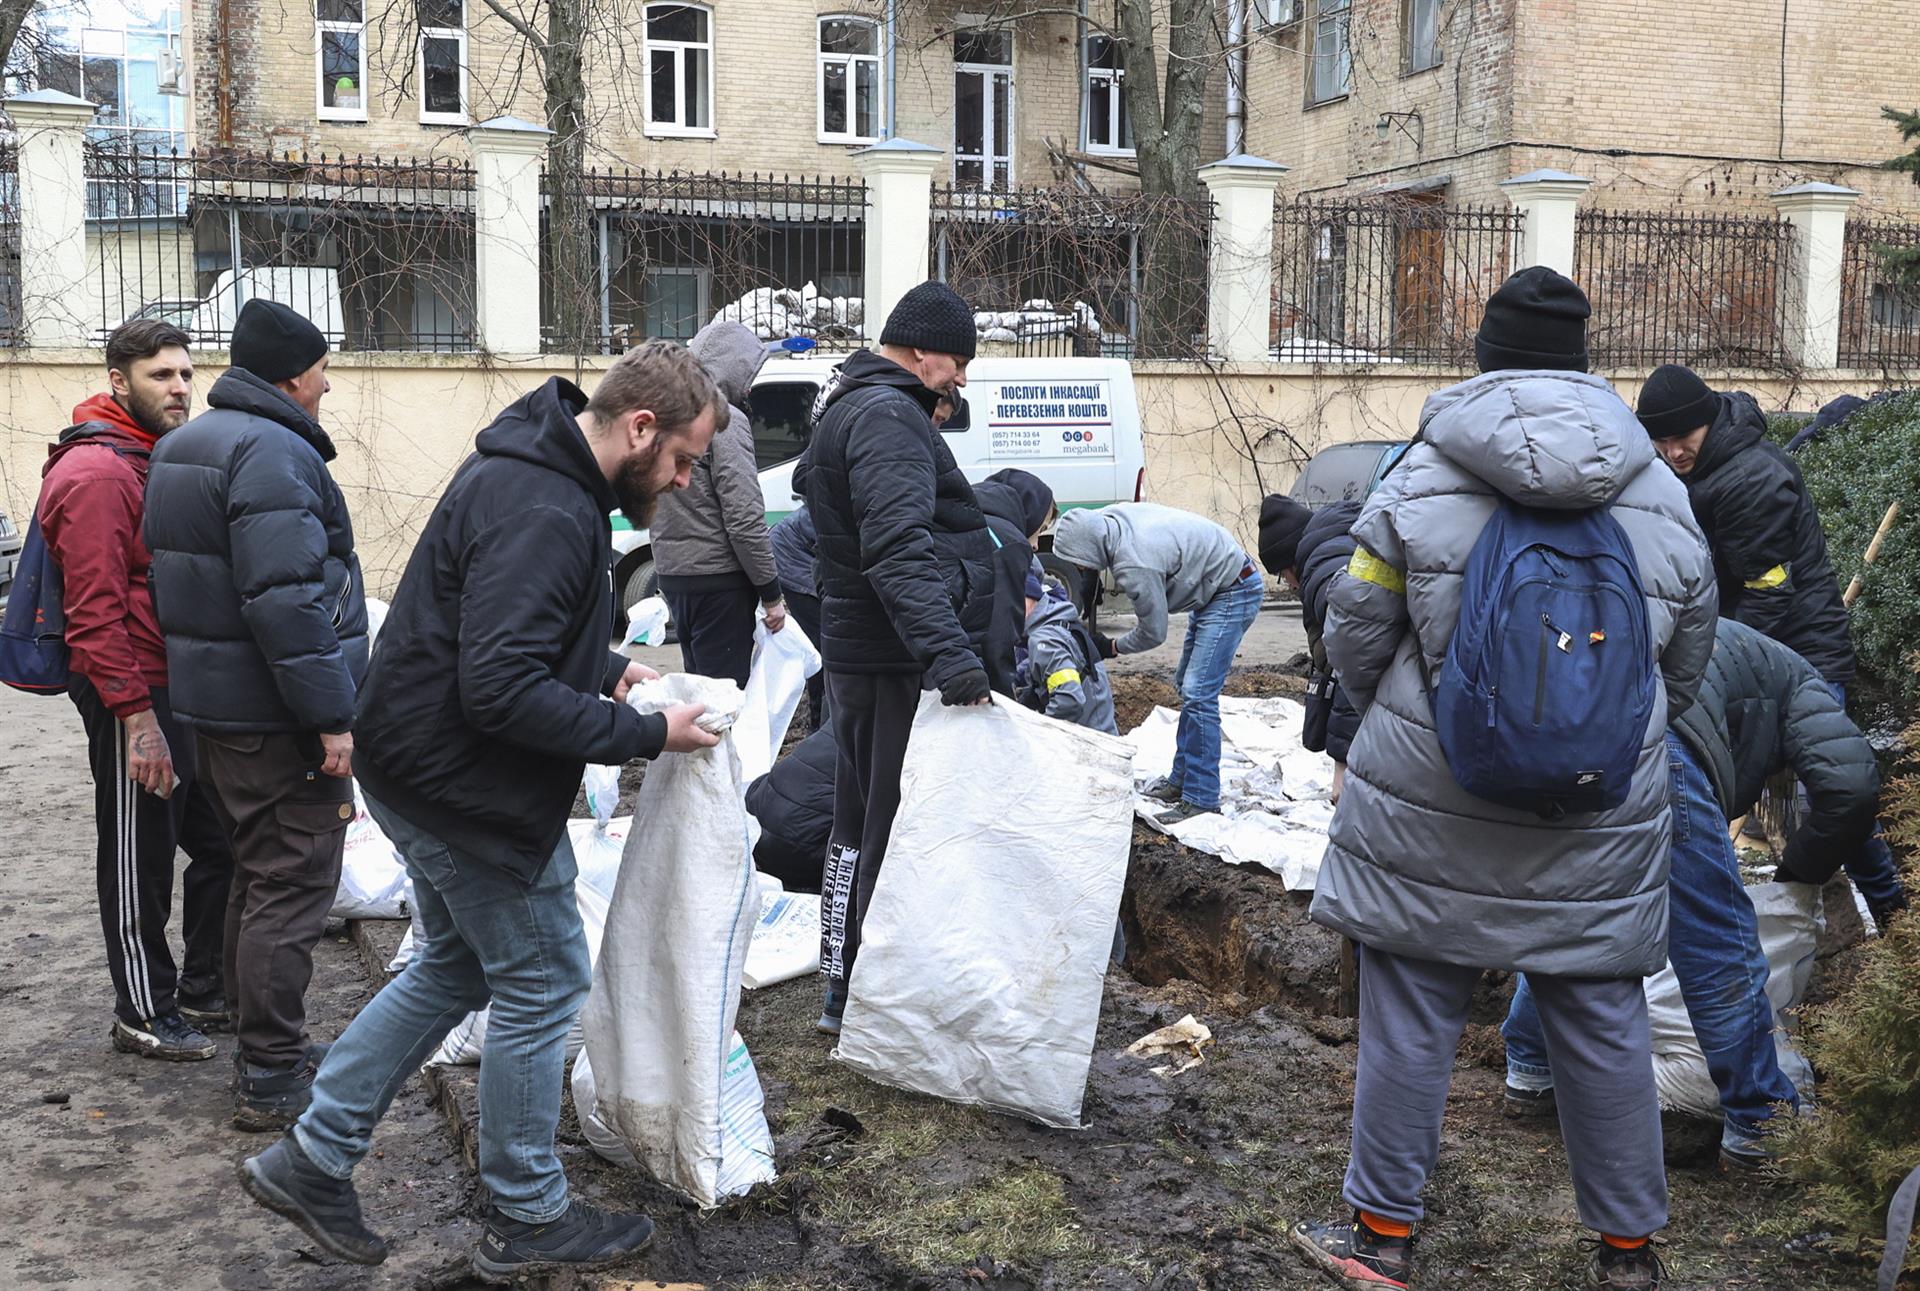 Civiles construyen barricadas en la ciudad ucraniana de Járkov.